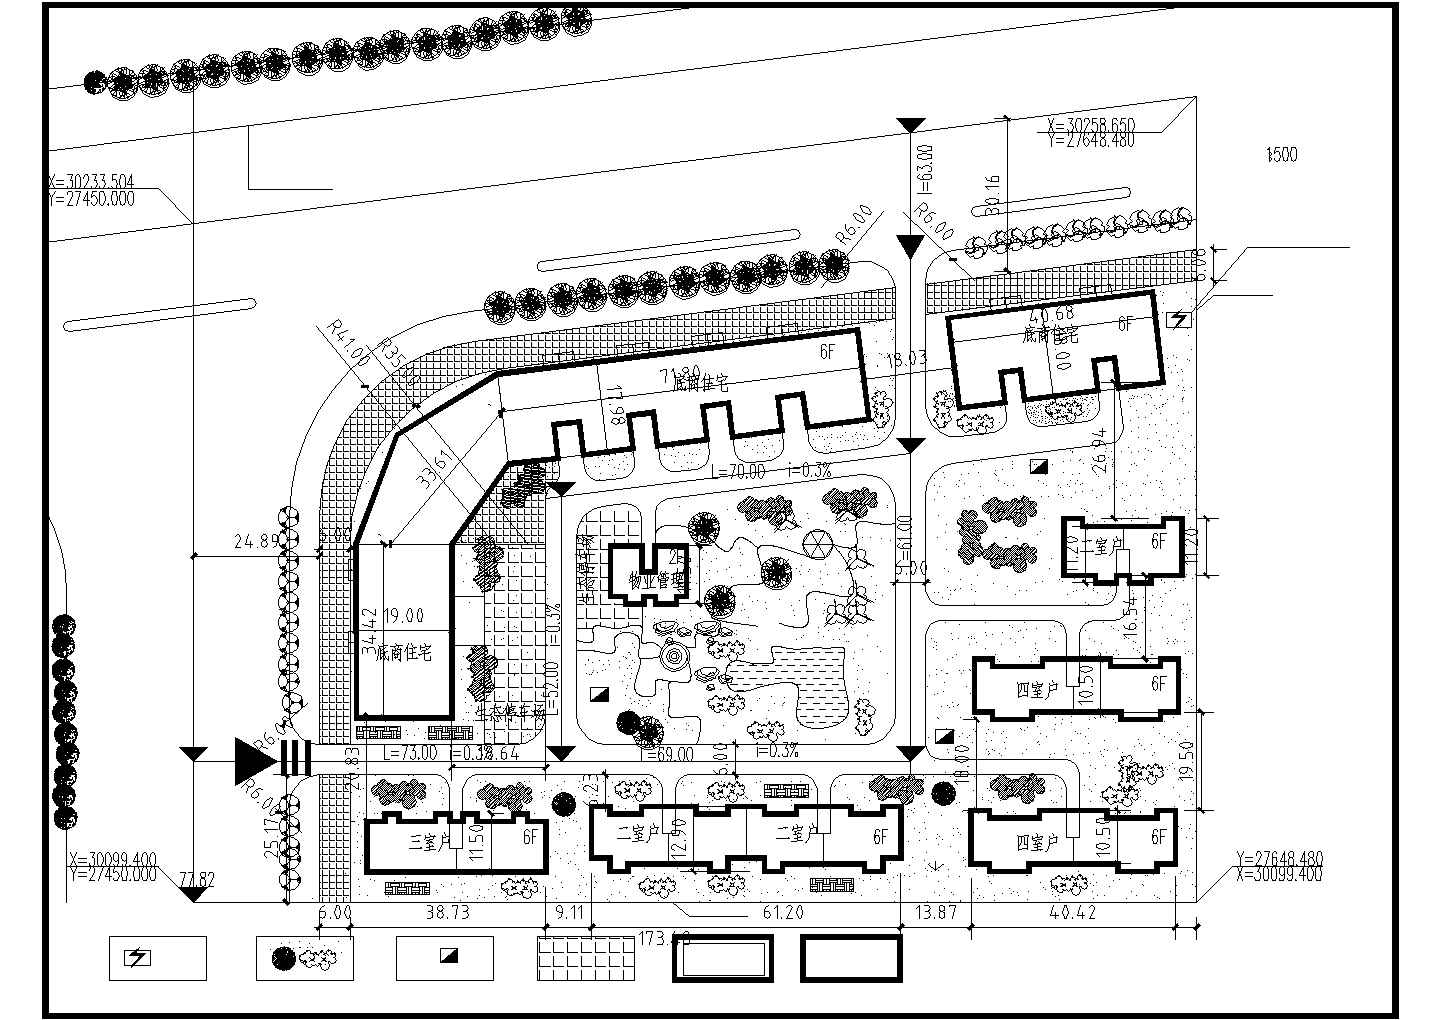 可利园建筑规划施工方案图